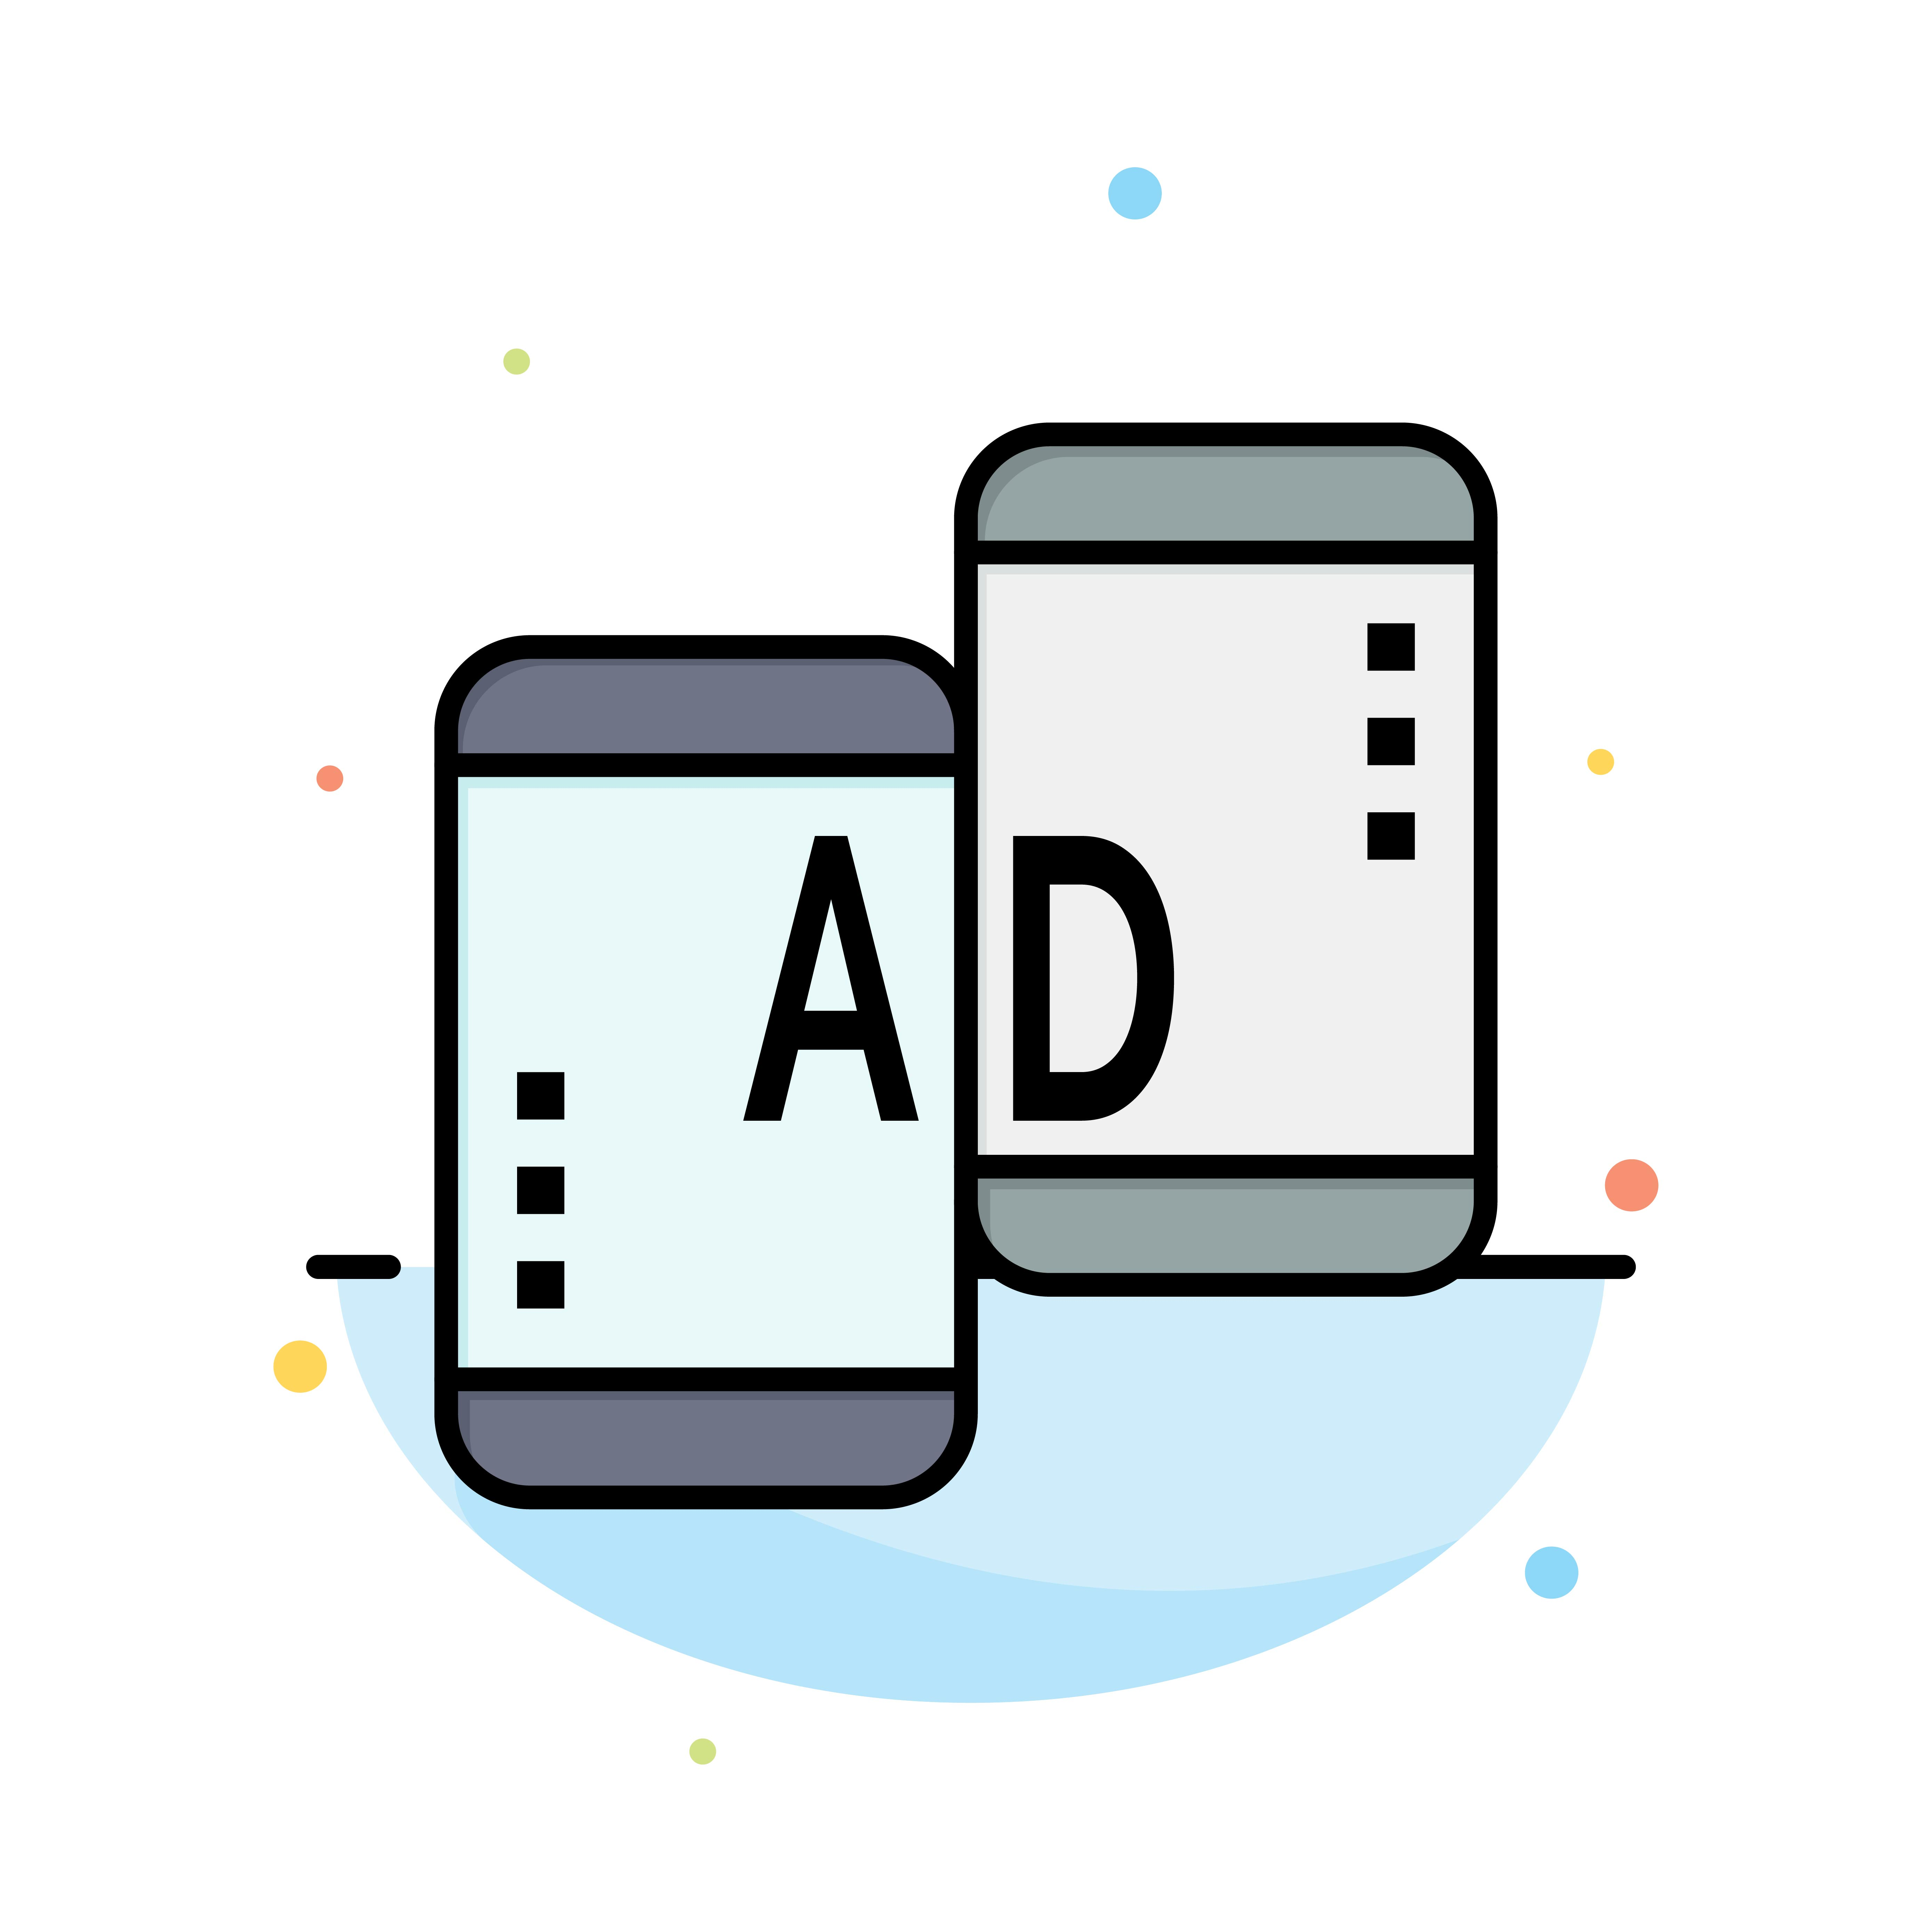 广告-advertising mobile mobile advertising marketing